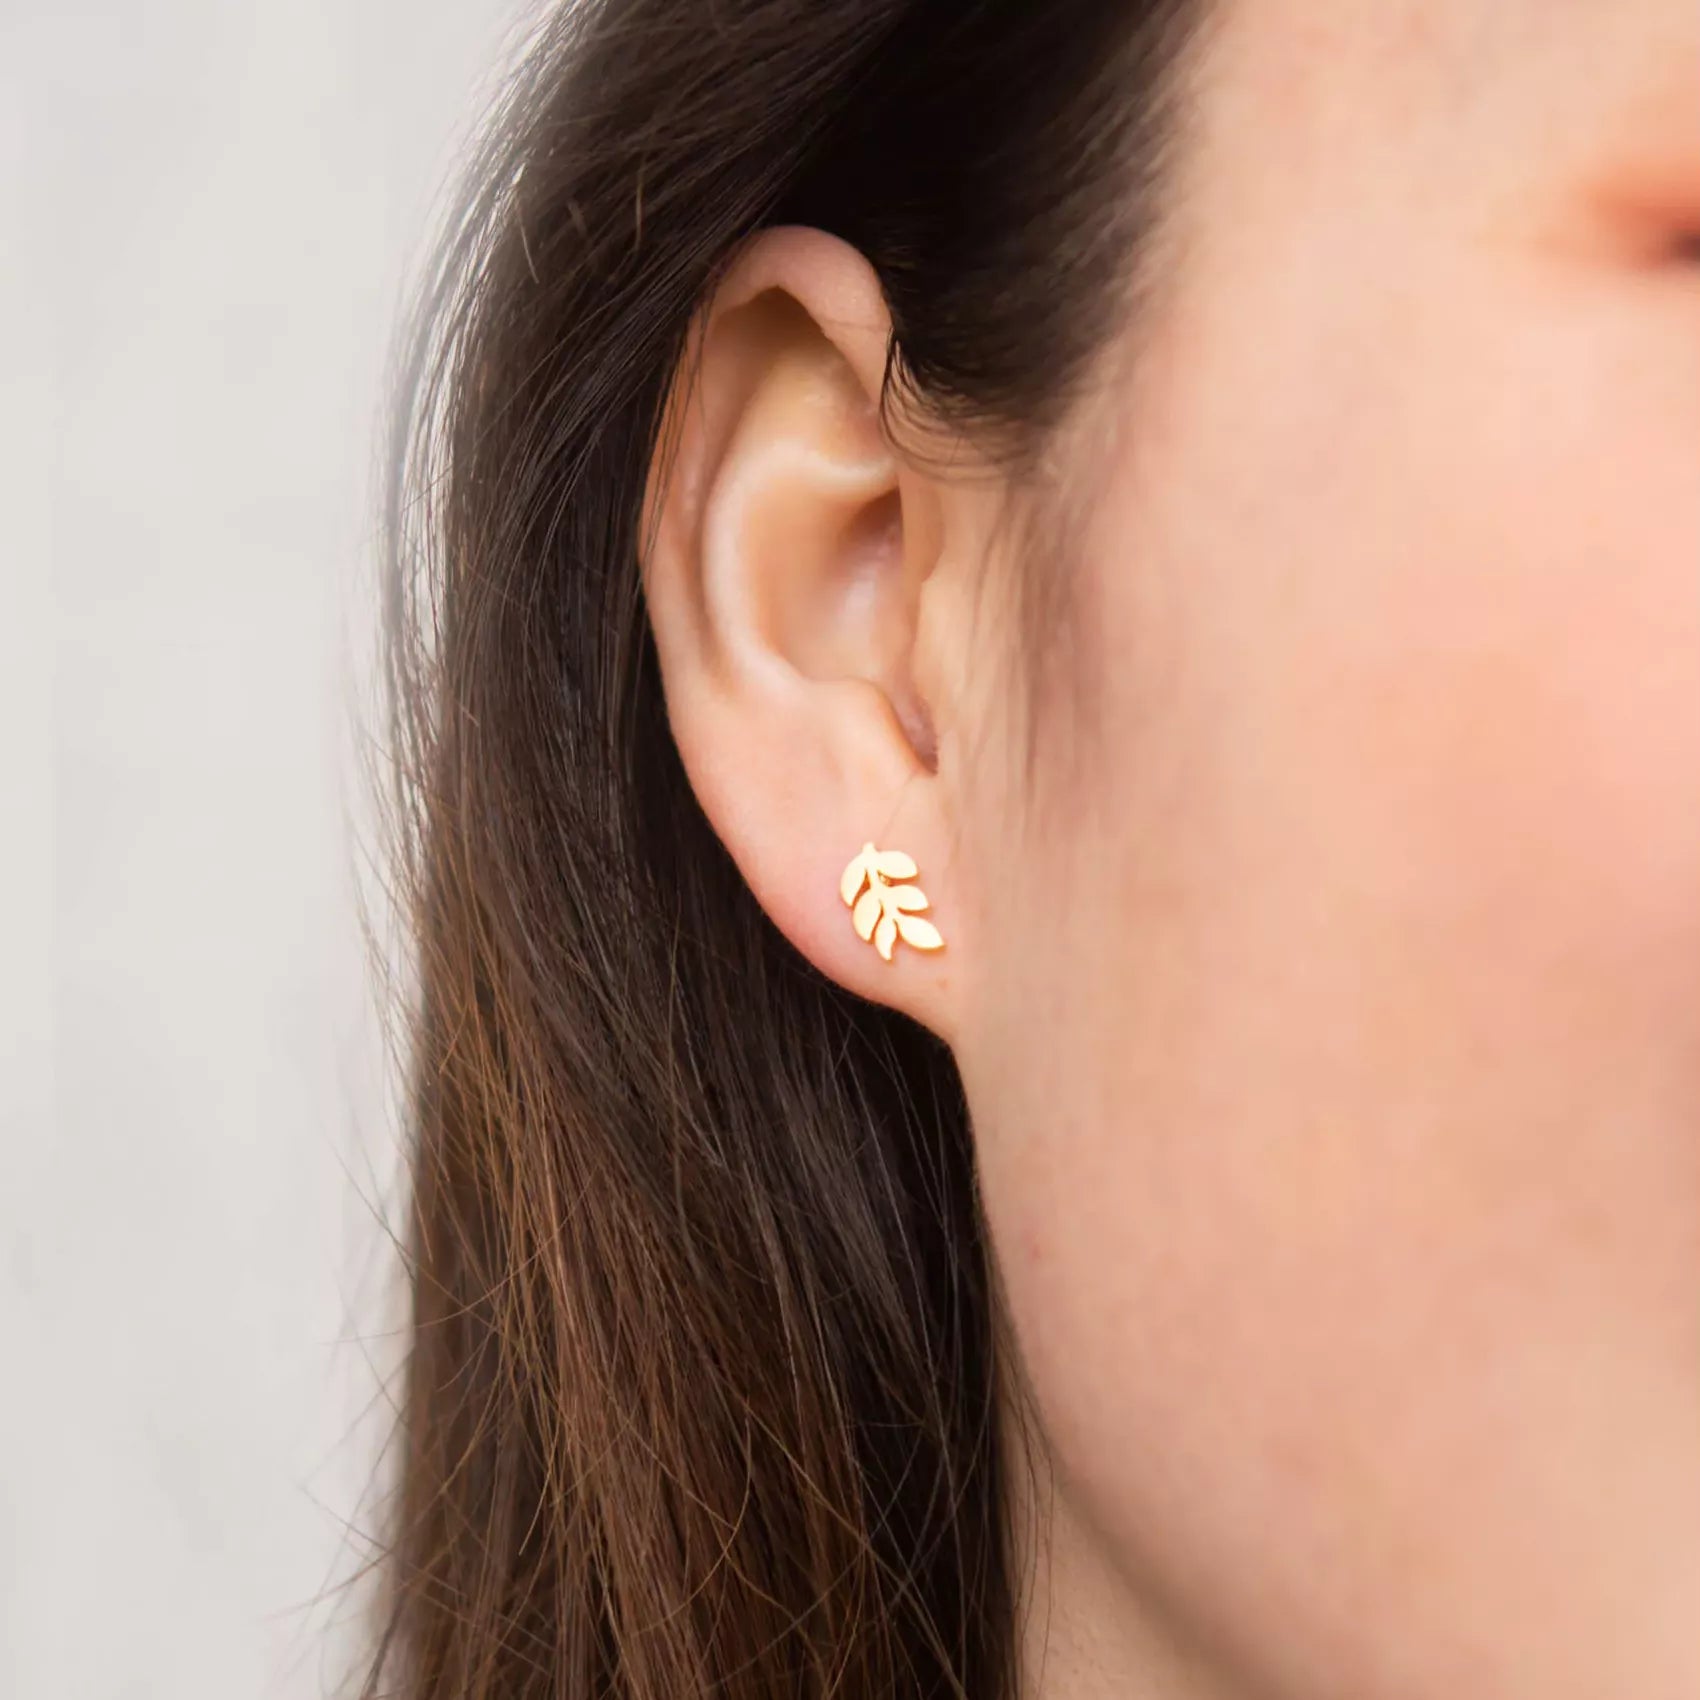 Rowen Leaf Stud Earrings in Gold Model Shot